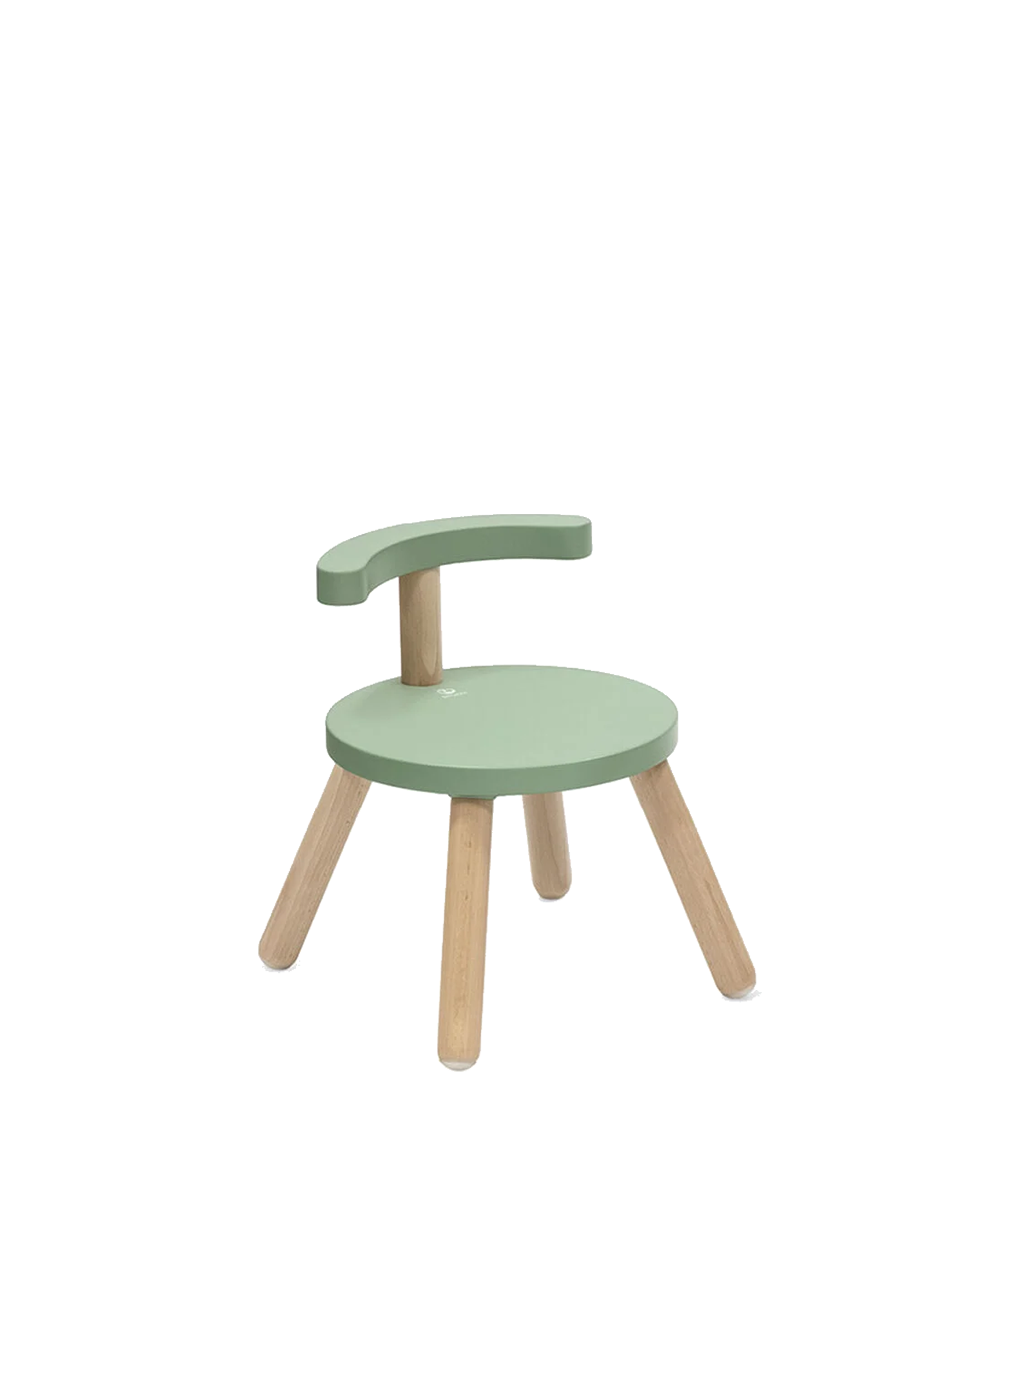 Chaise en bois pour la table MuTable